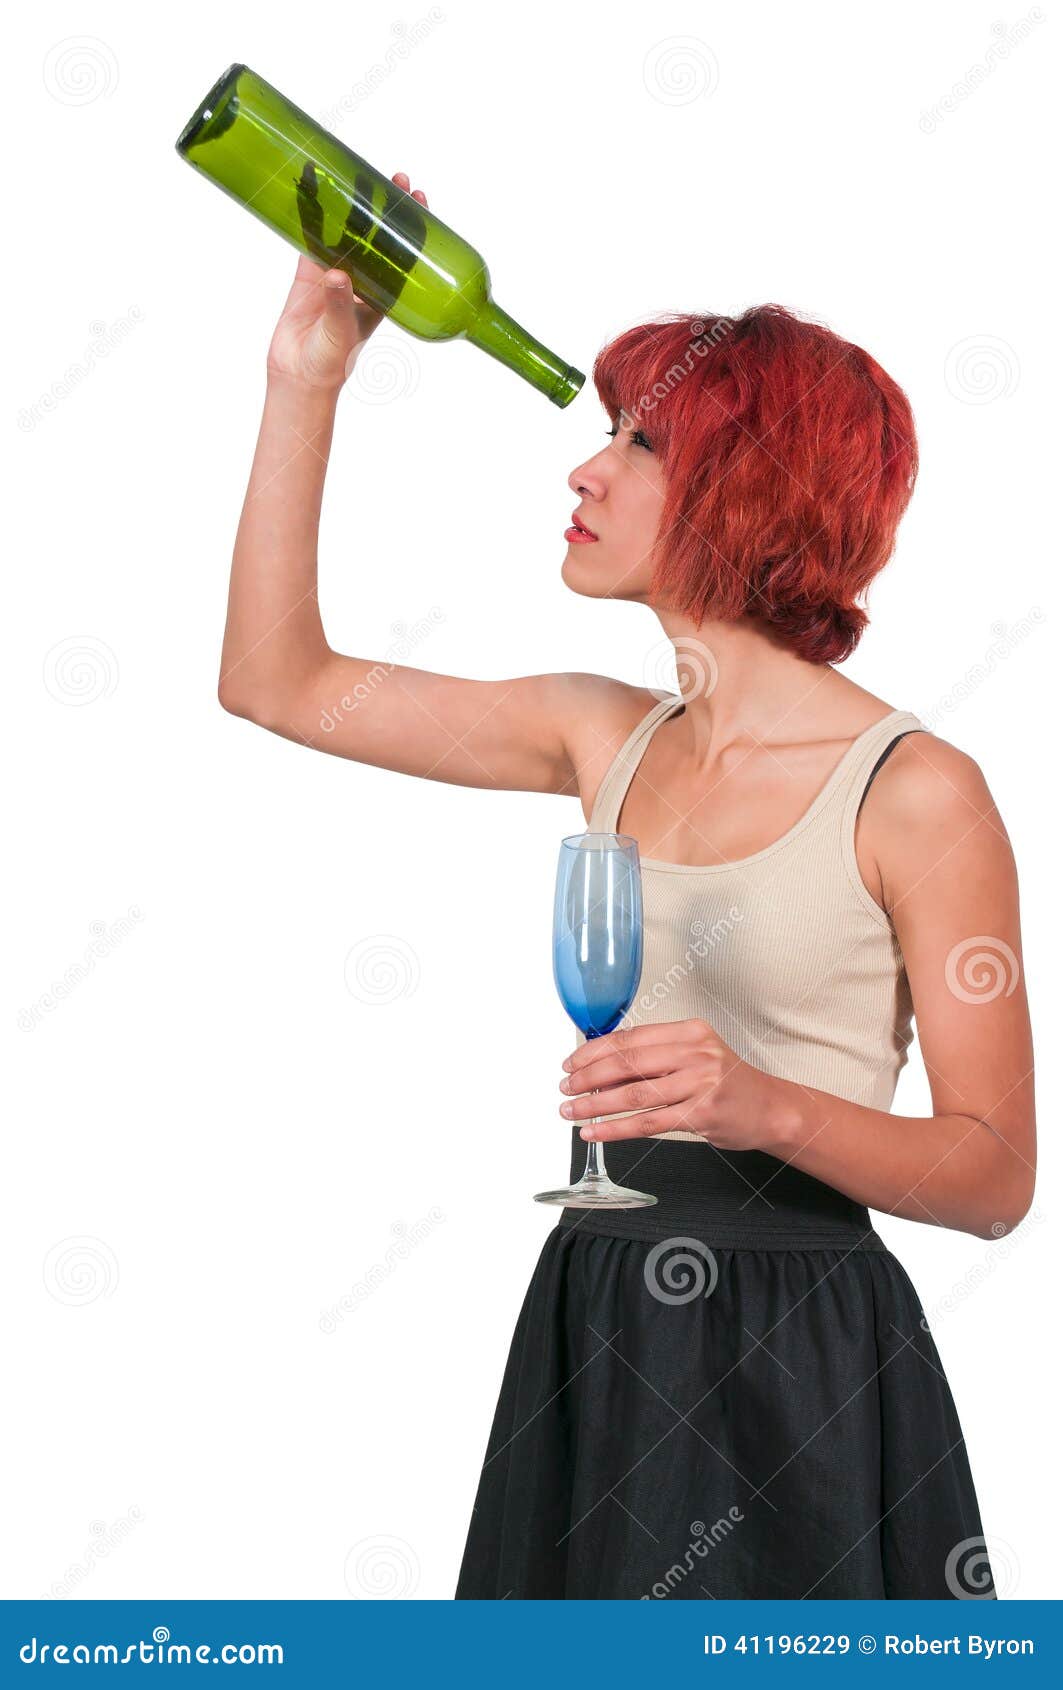 woman-empty-wine-bottle-beautiful-holding-41196229.jpg